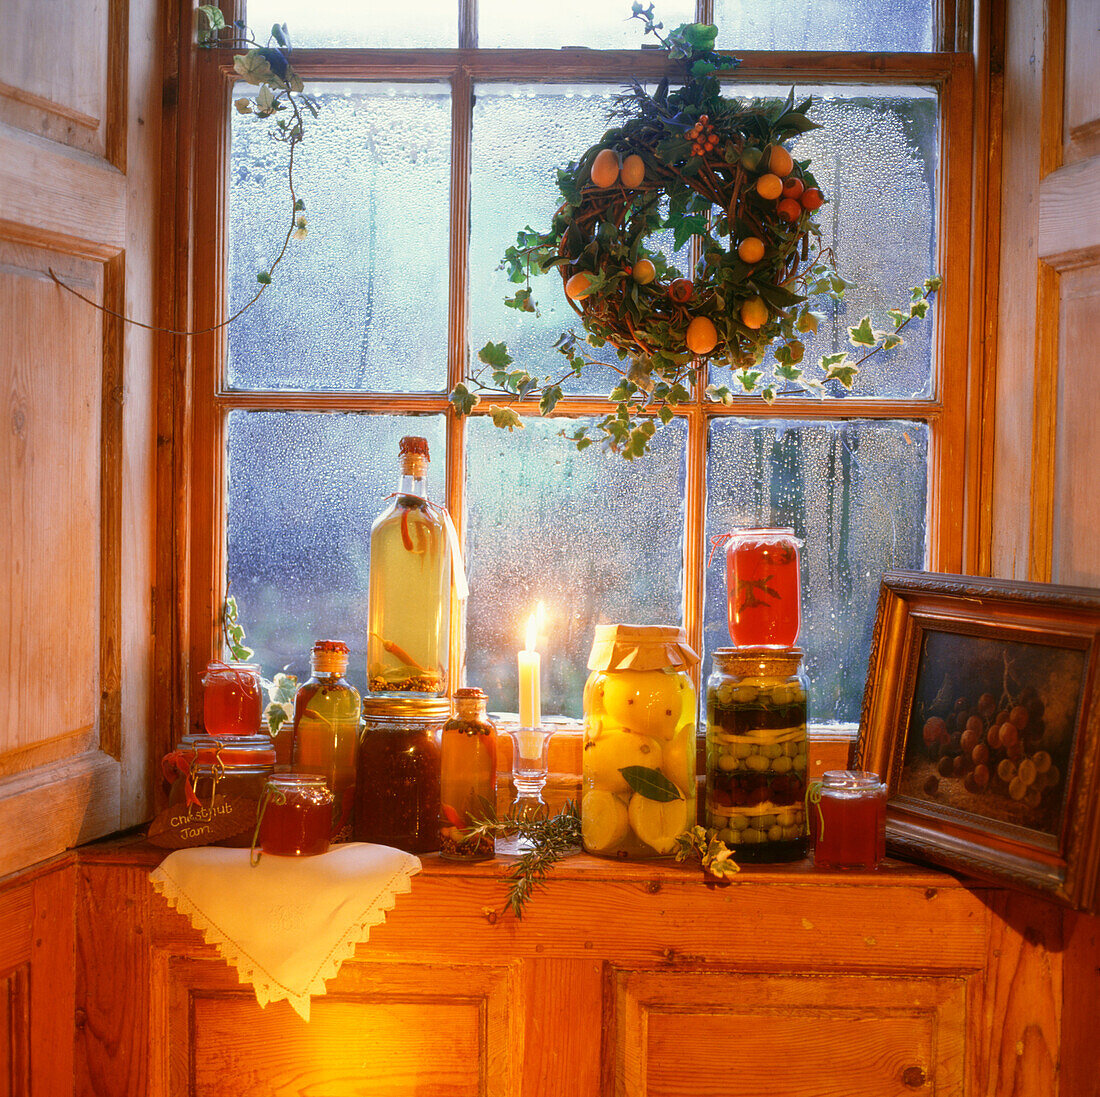 Beschlagenes Fenster an einem Winterabend mit eingelegtem Gemüse und Weihnachtsschmuck